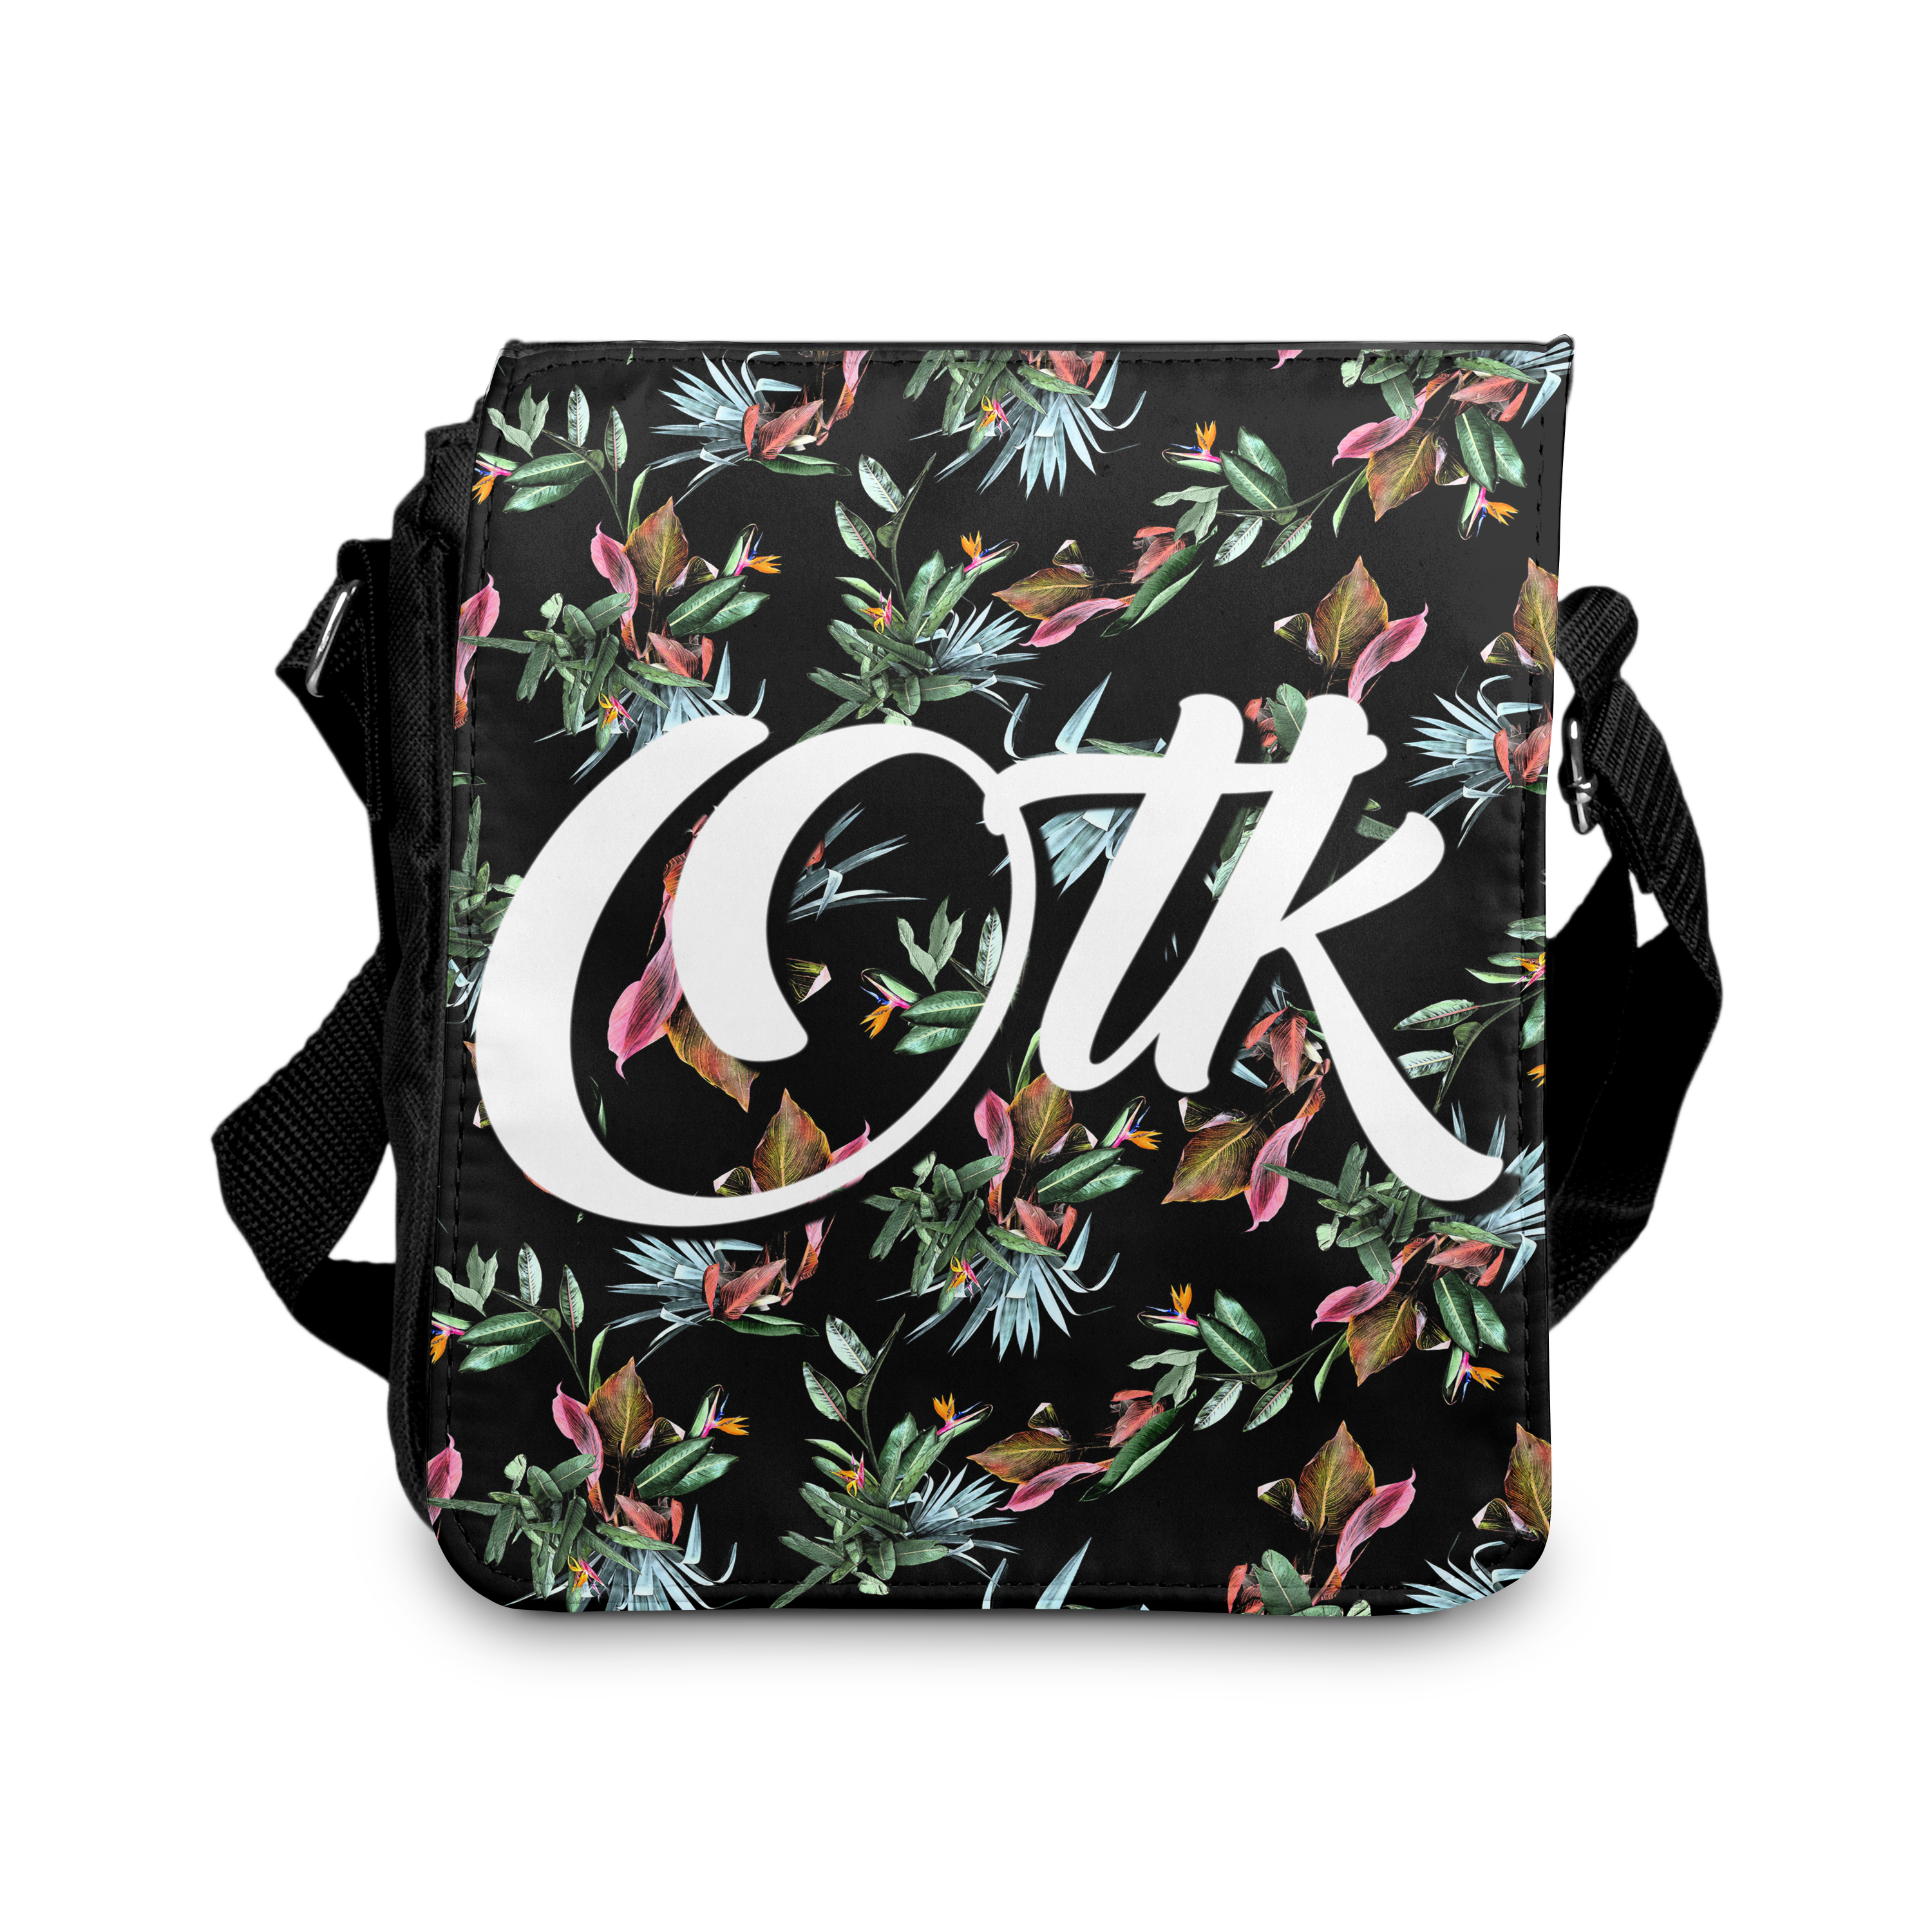 OTK Onyx Floral Shoulder Bag